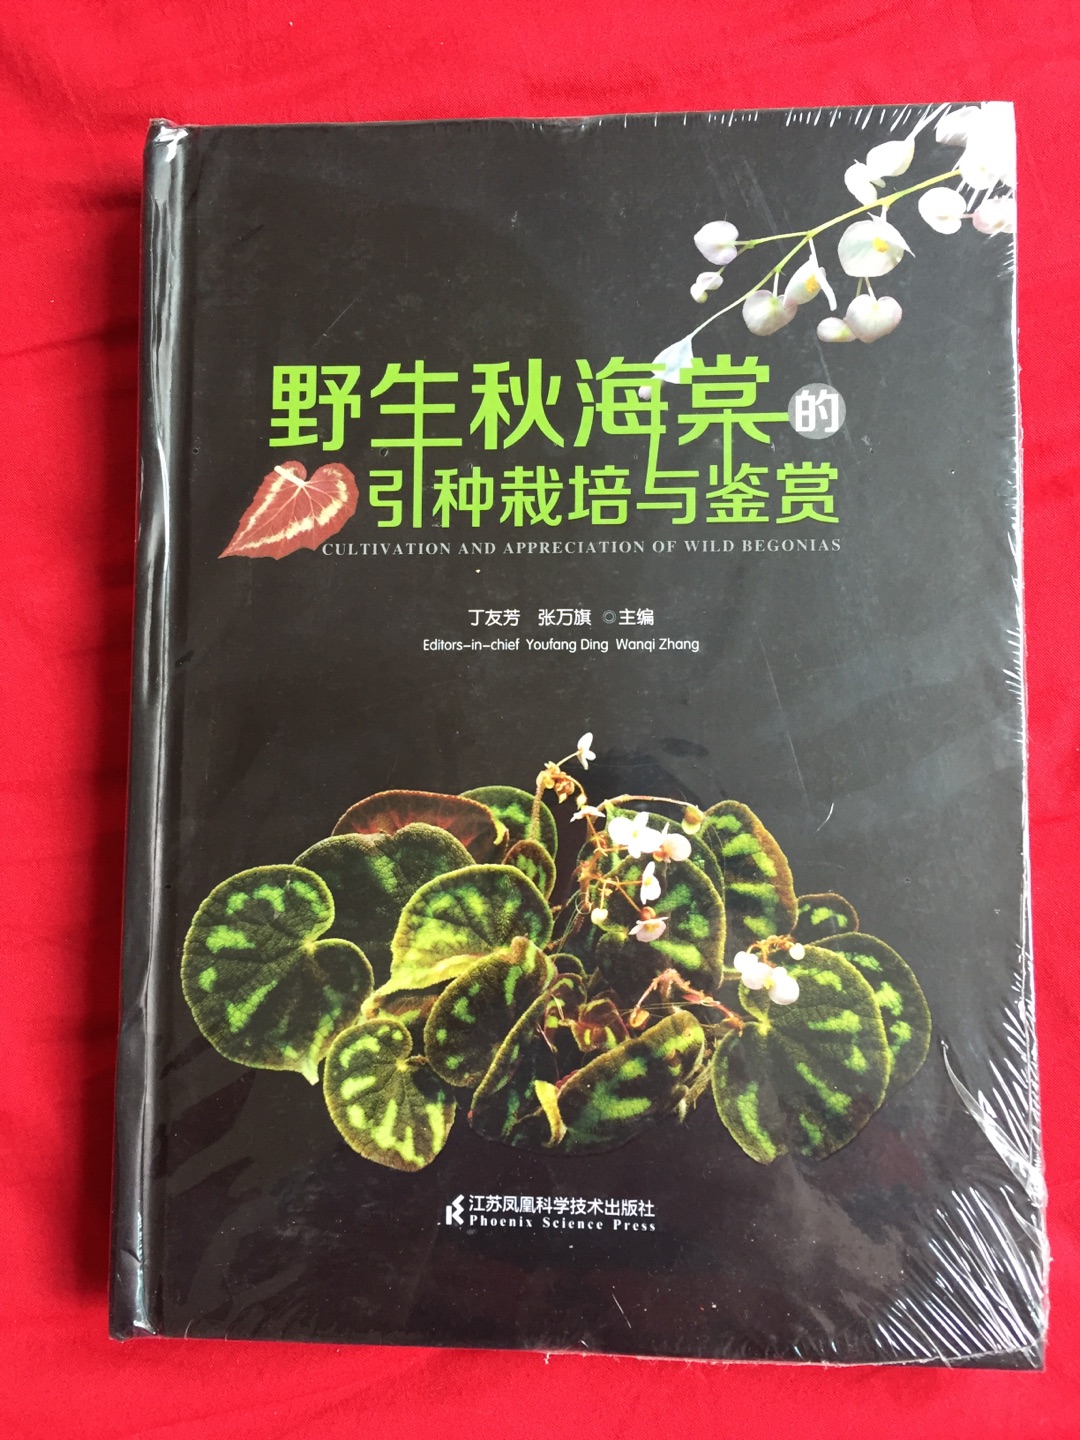 介绍秋海棠属植物的专著，可以好好了解一下。